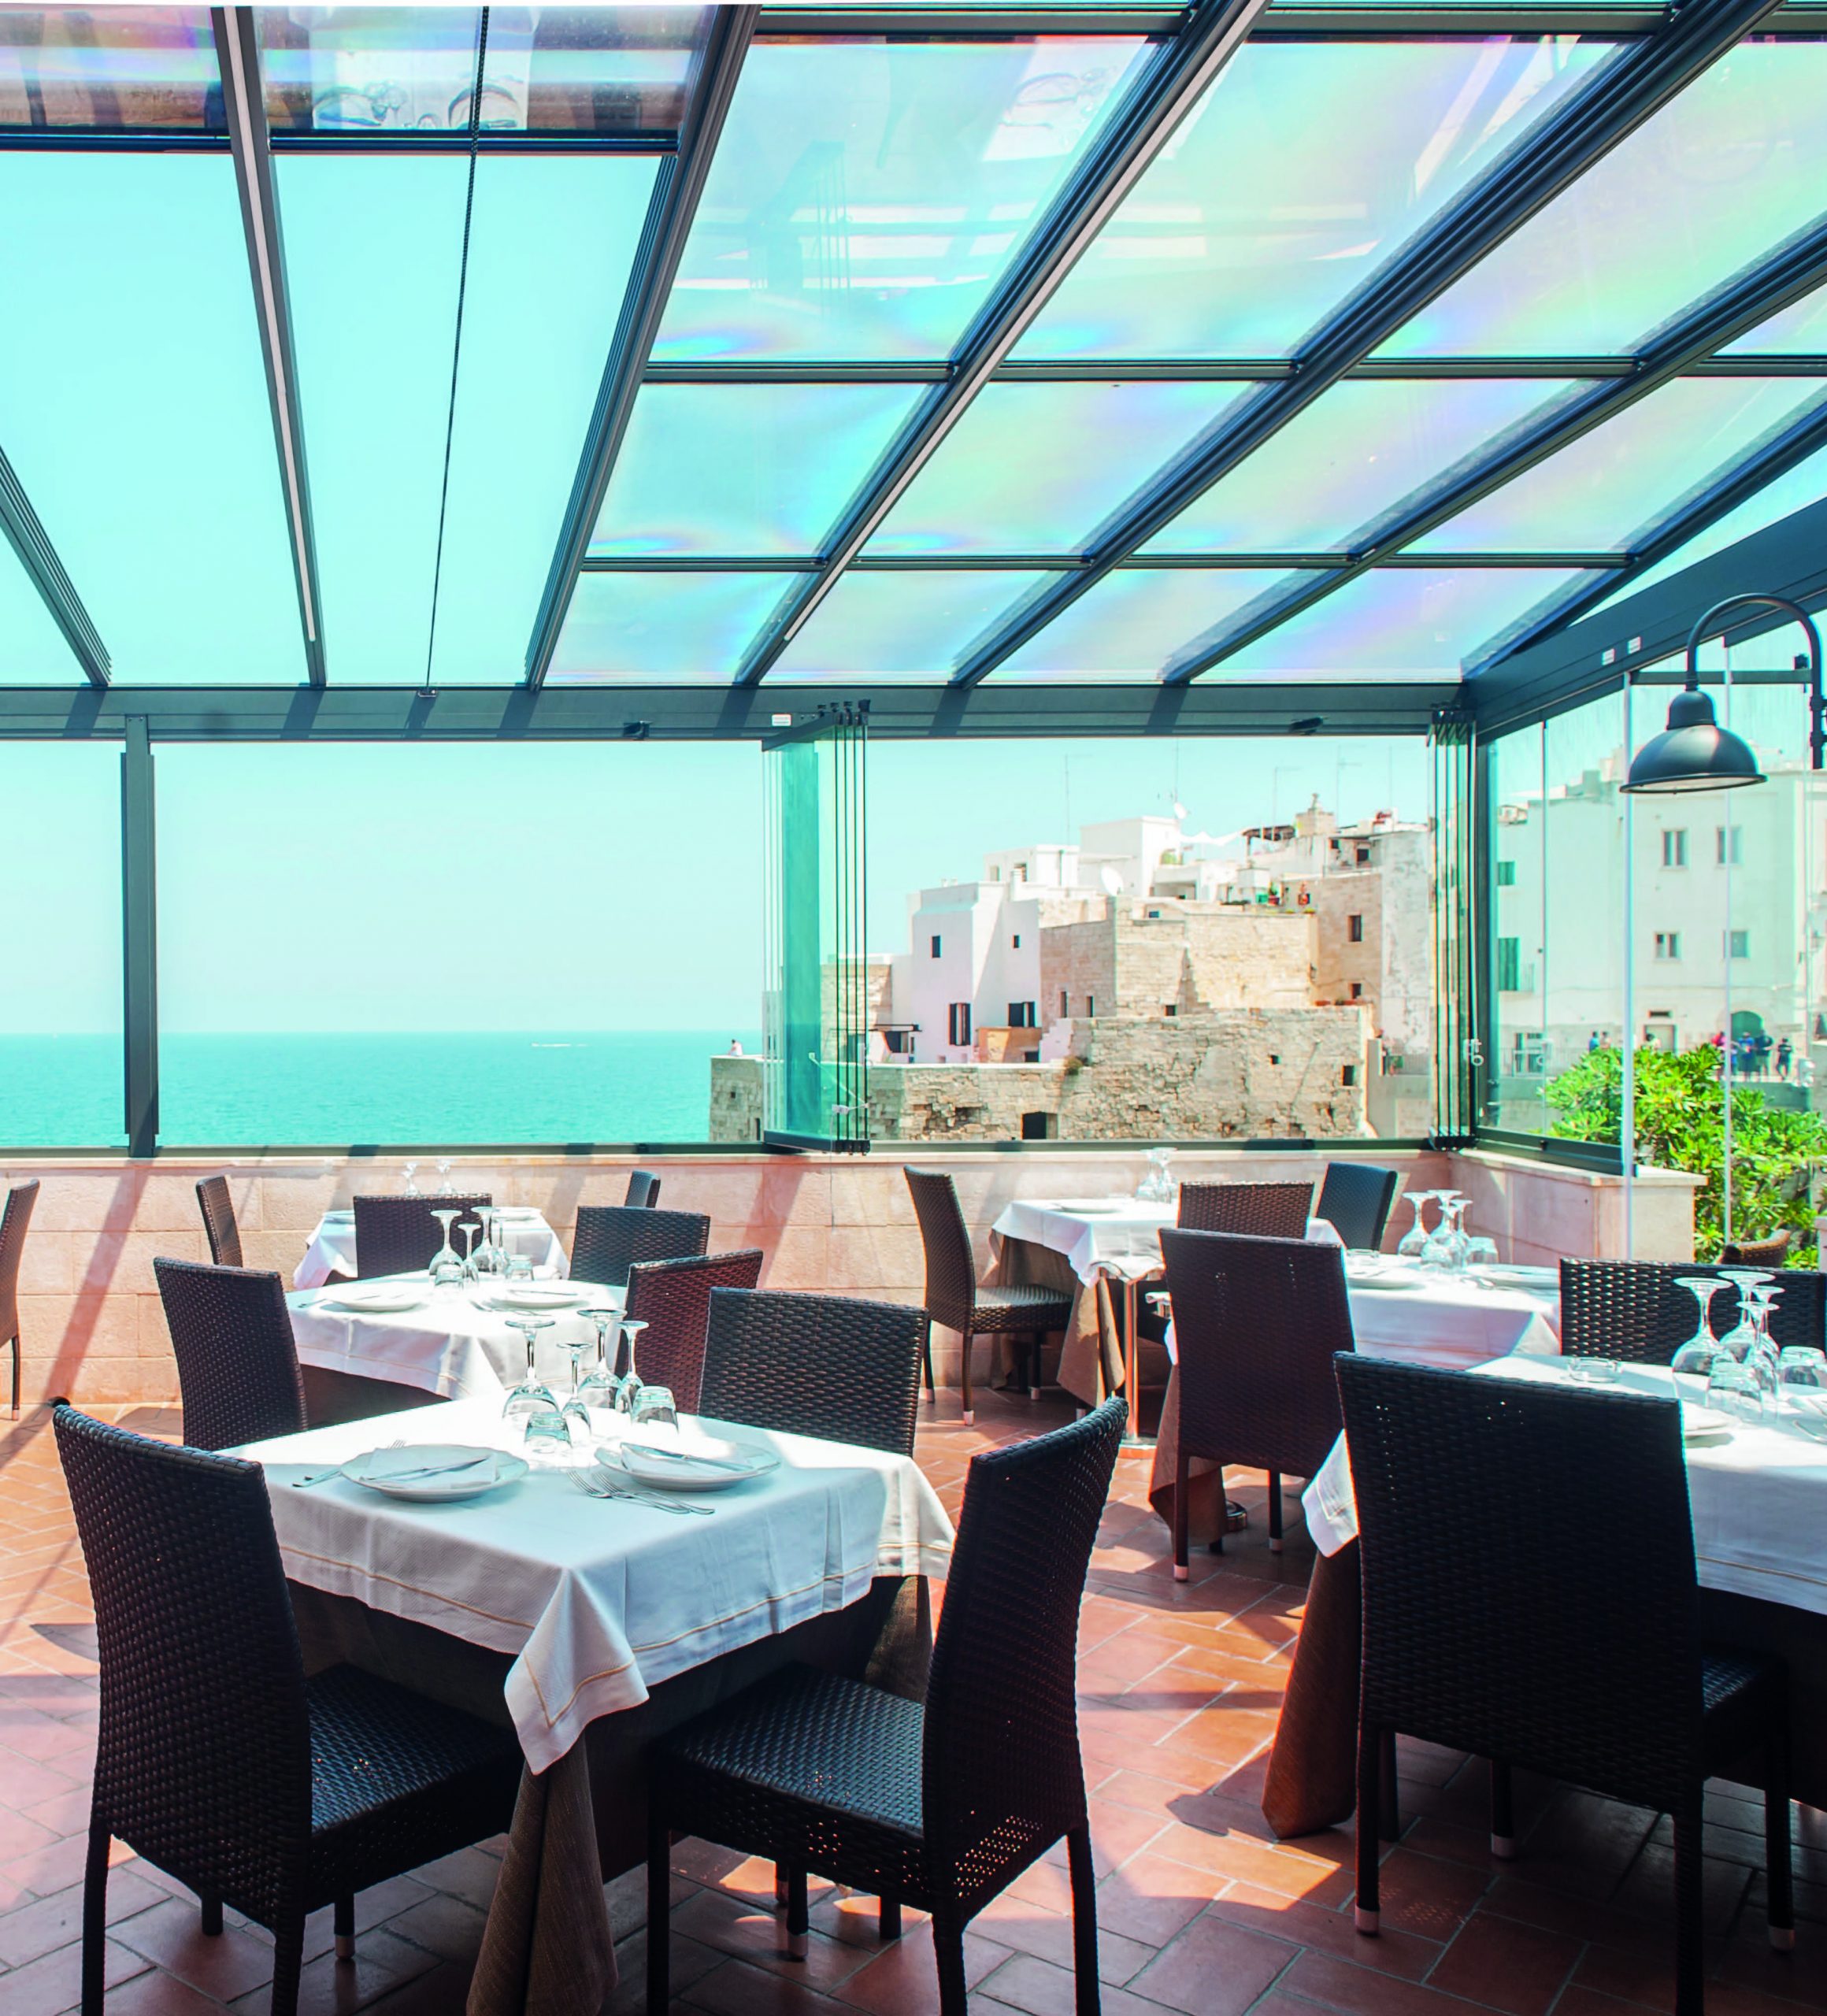 vetrate panoramiche coperture dehor ristorante destagionalizzazione turismo domestico